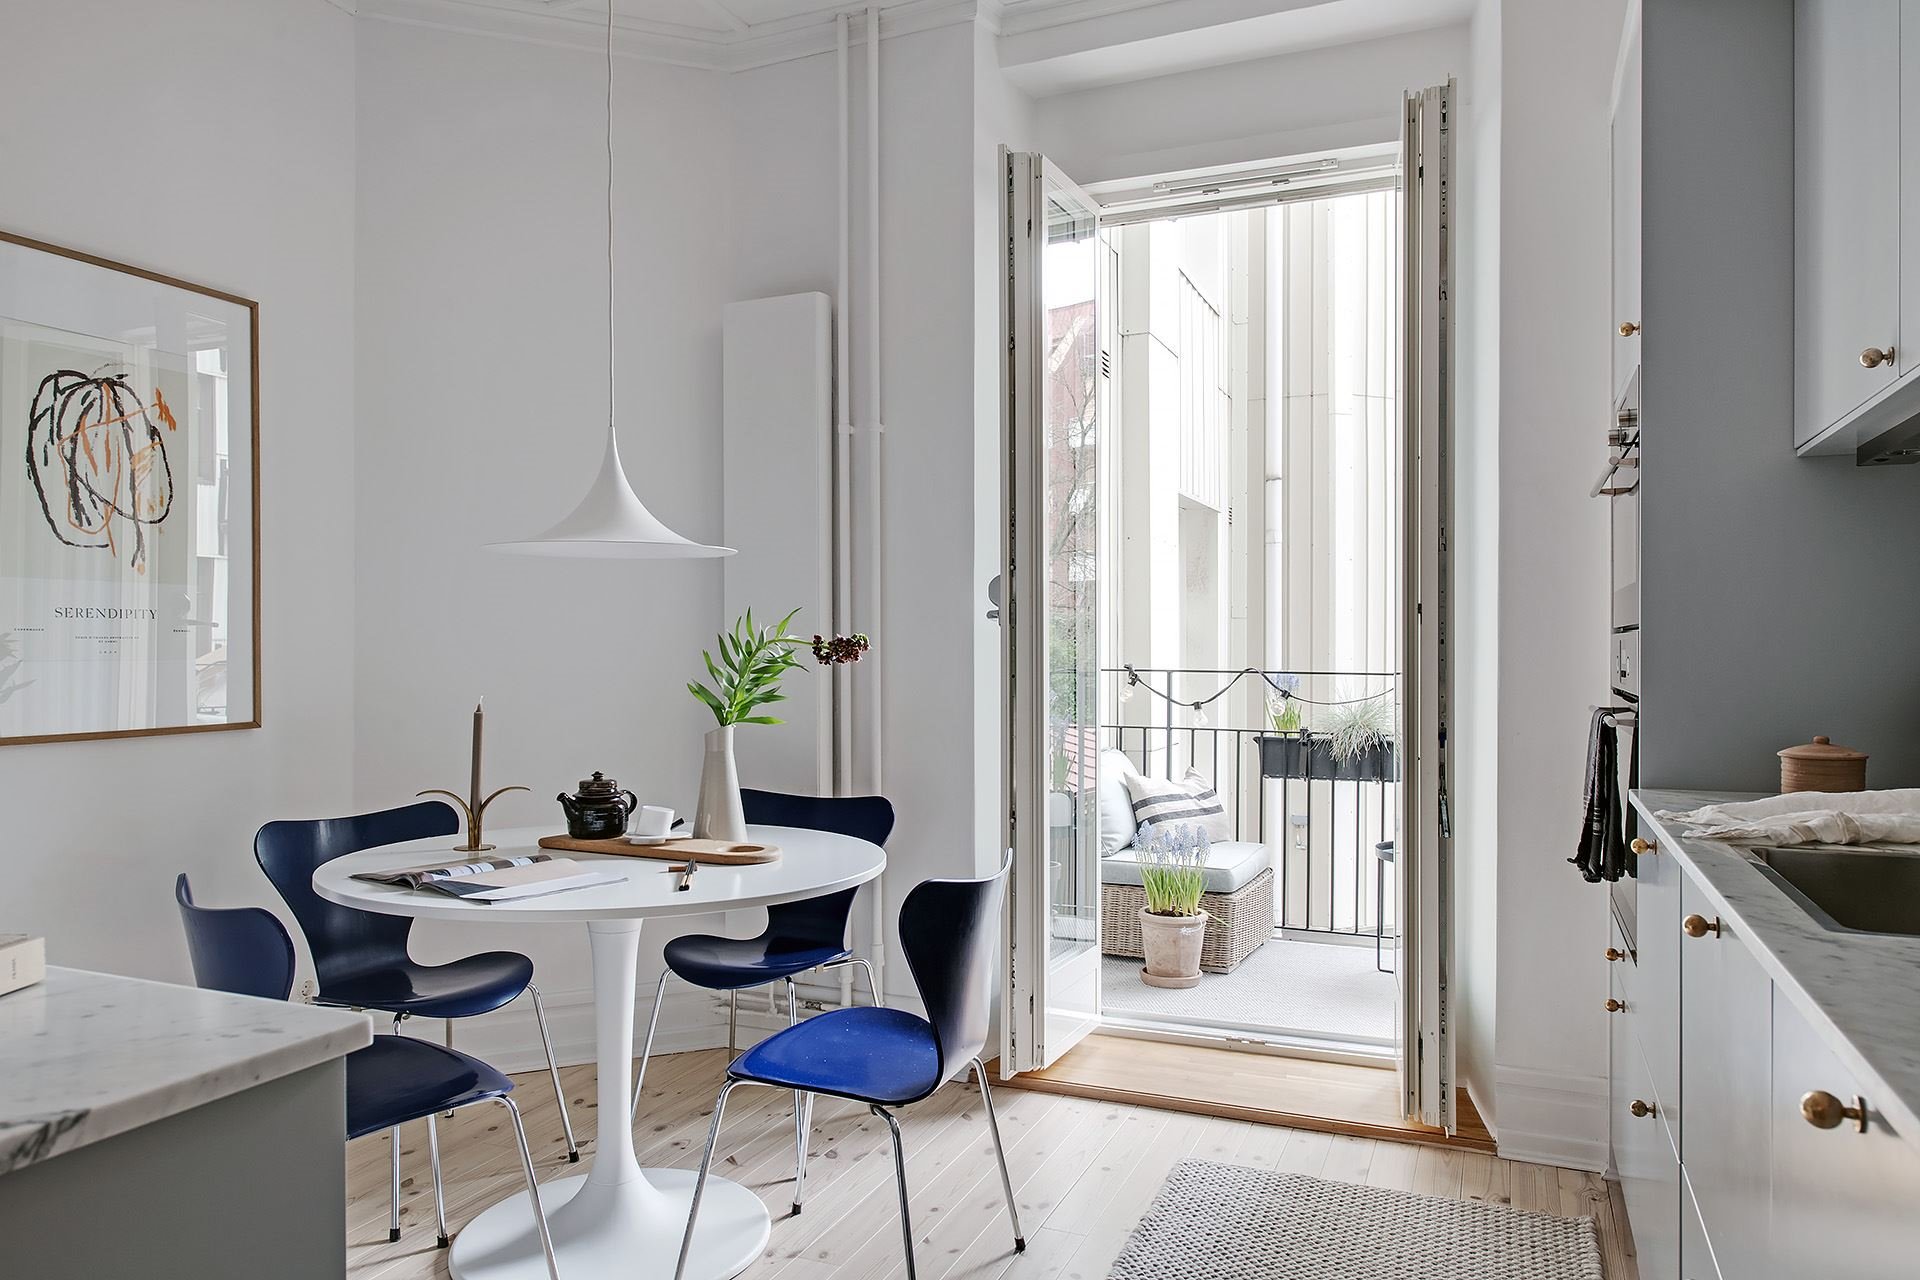 Piso con decoracion nordica moderna y paredes pintadas en color gris comedor con mesa redonda y sillas azules